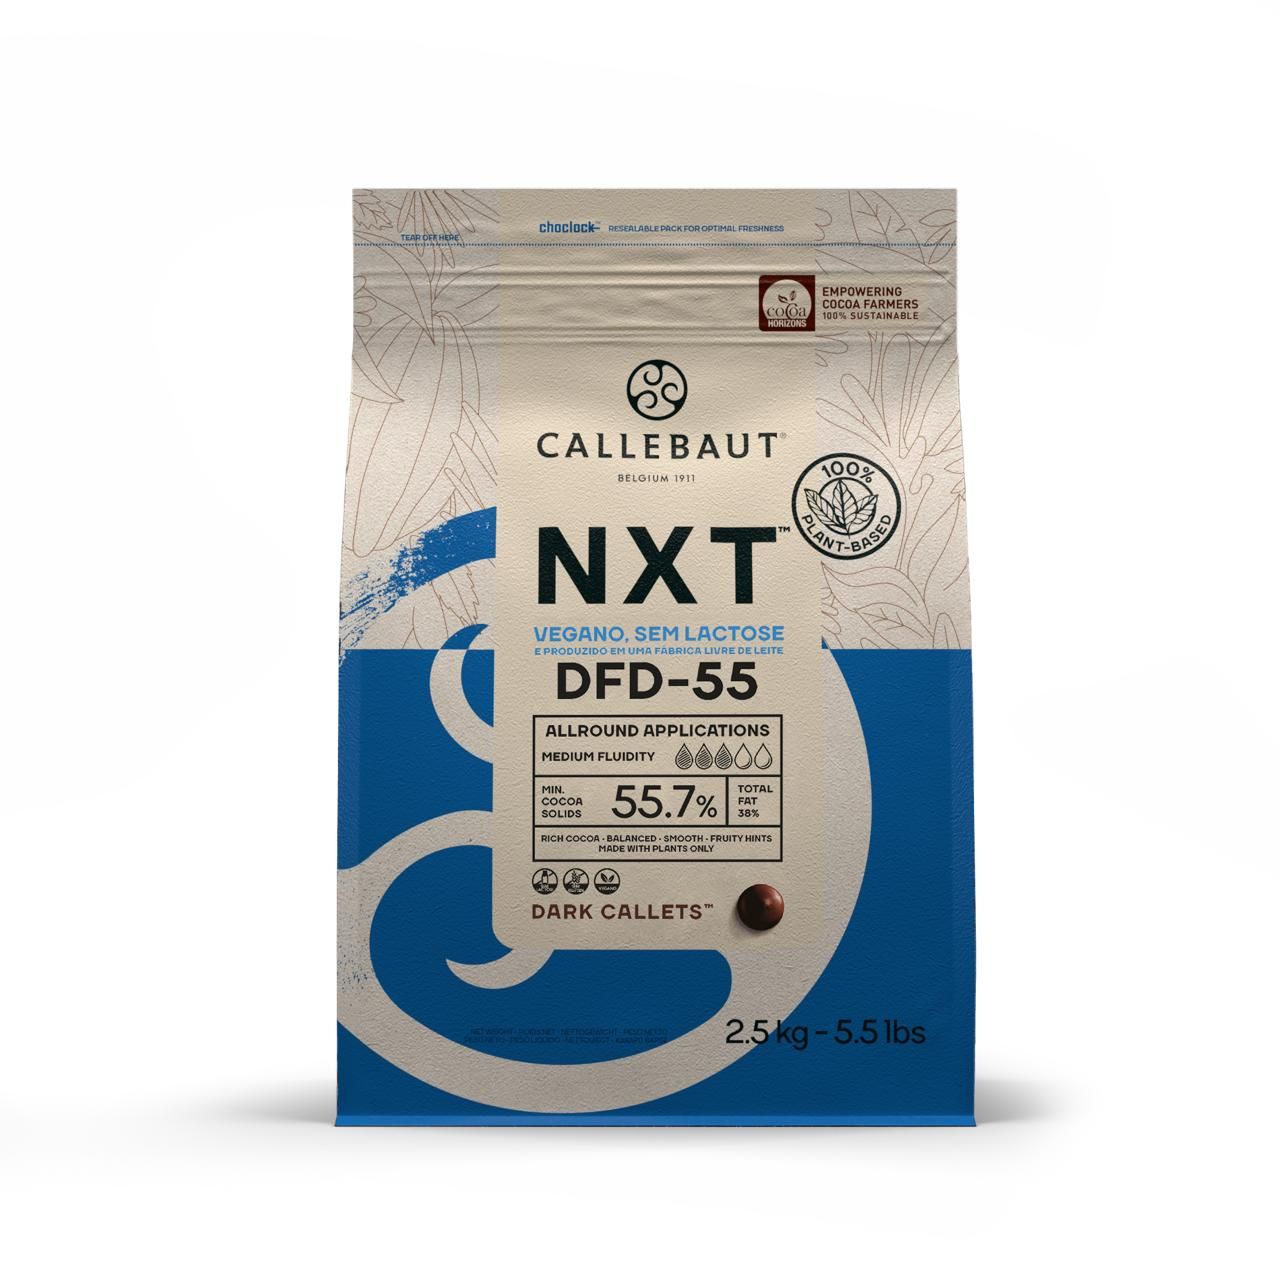 Dairy Free Dark Chocolate - NXT DFD-55 - 2.5kg Callets (1)